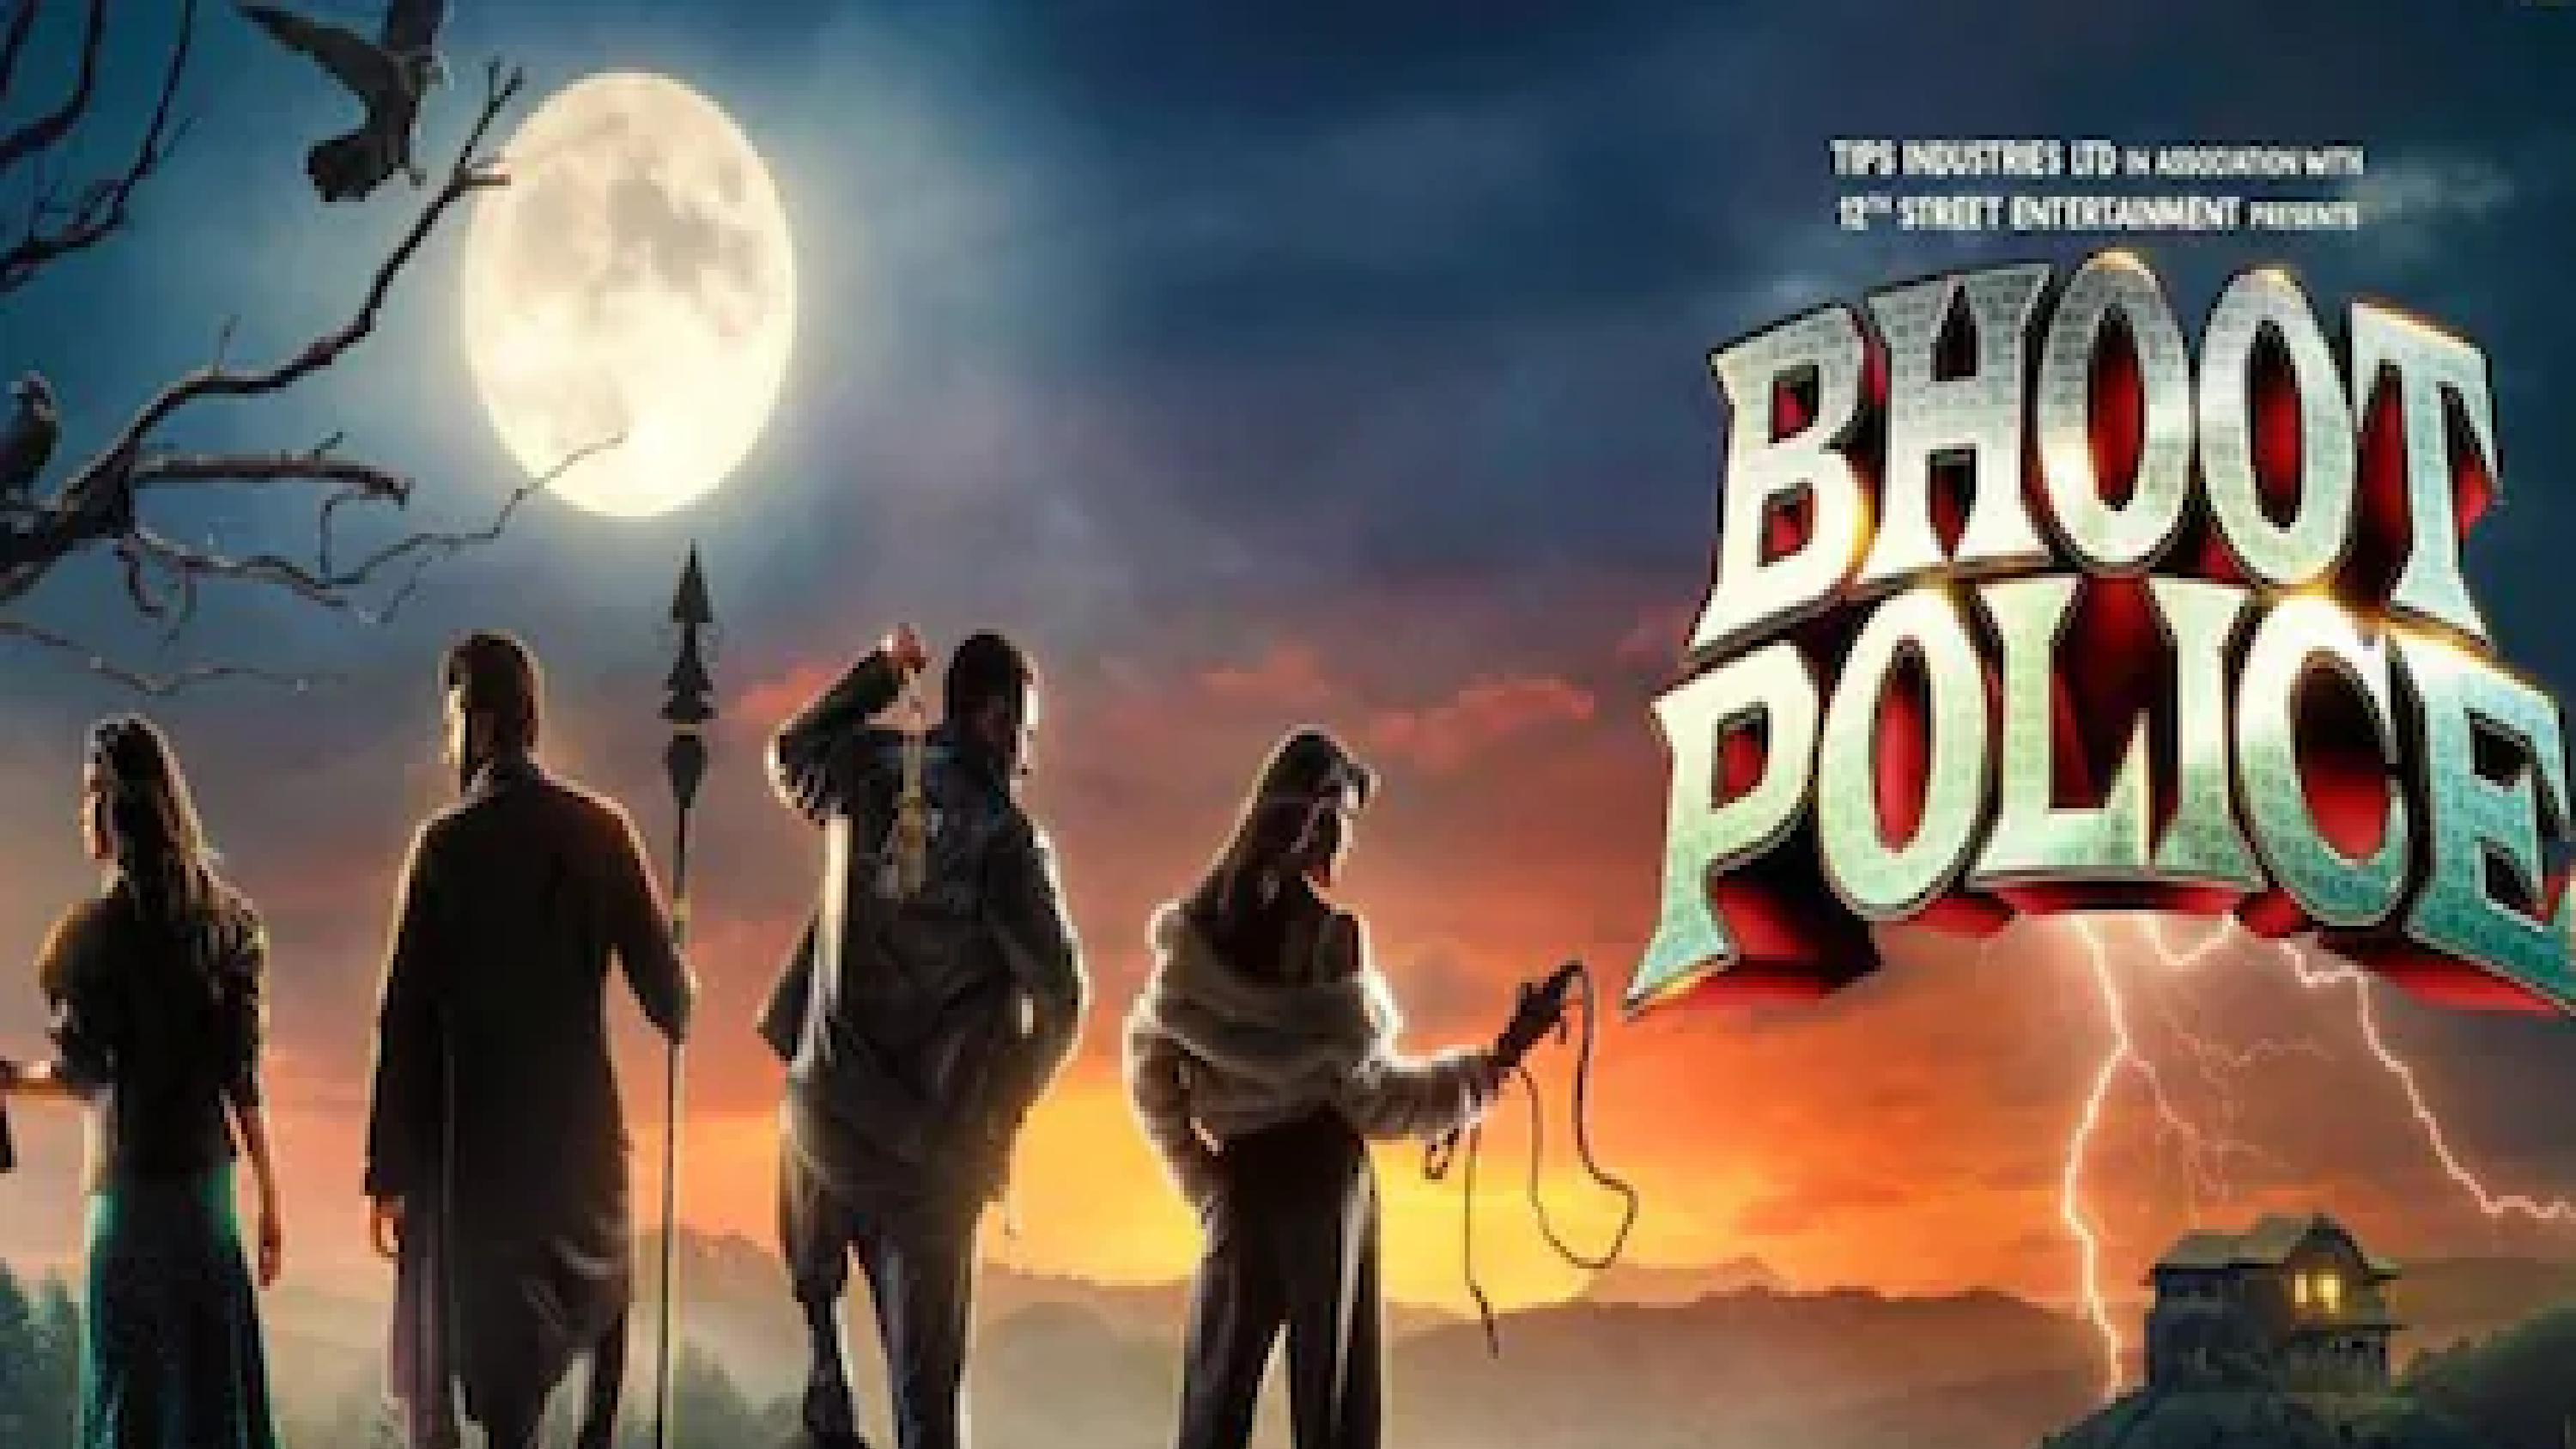 CONFIRM: सैफ अली खान और जैकलीन फर्नांडिस की फिल्म 'भूत पुलिस' OTT पर होगी रिलीज